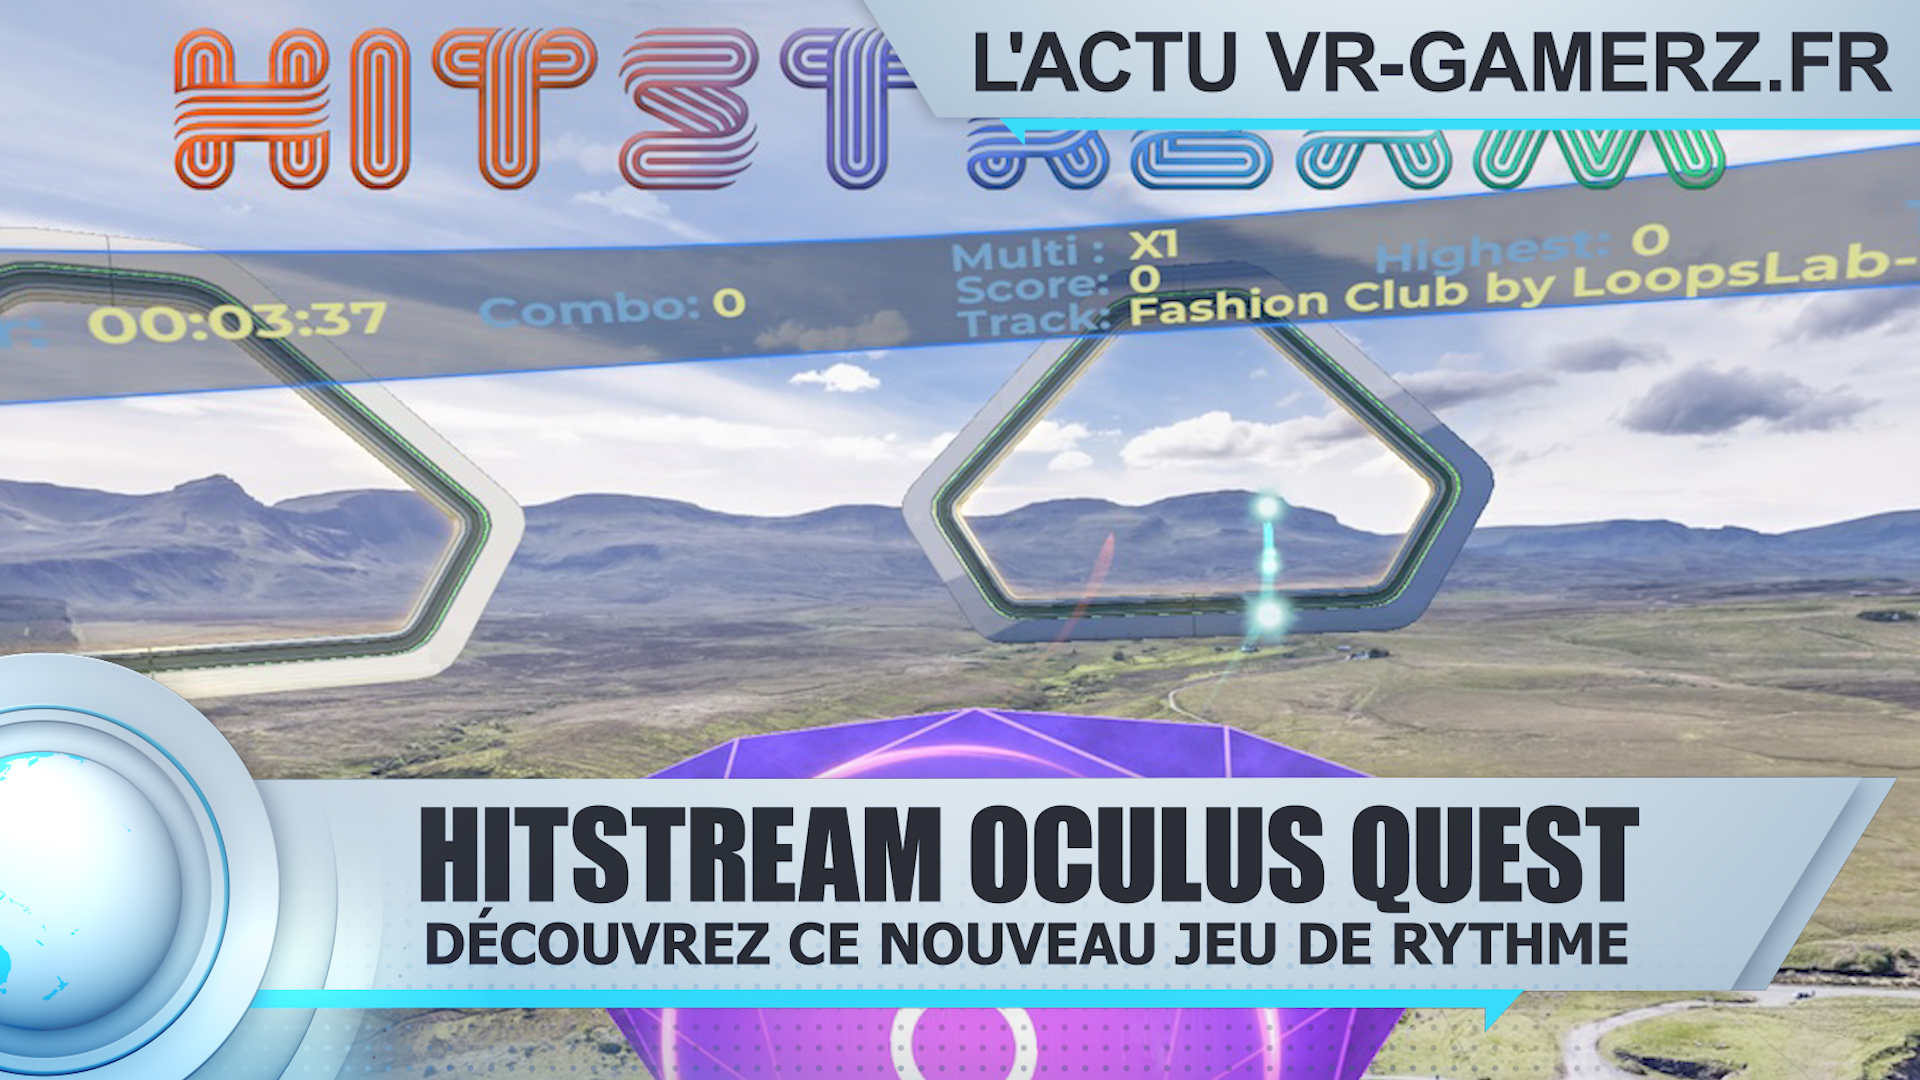 Hitstream Oculus quest : Le jeu de rythme reçoit quelques améliorations